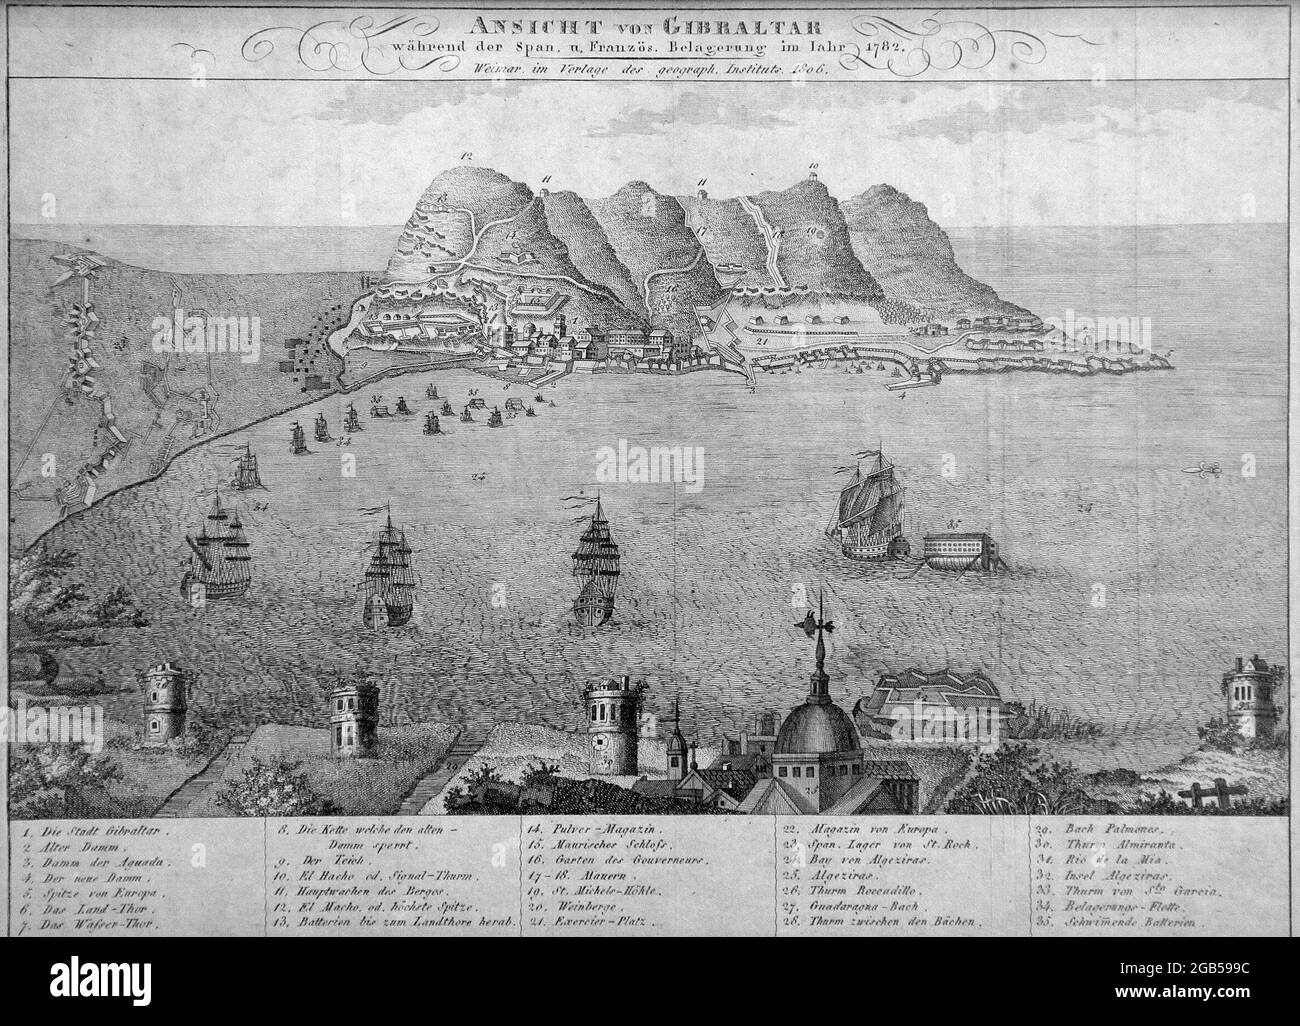 Ansicht von Gibilterra.Wahrend der spanische und Franzosische Belagerung im jahr 1782.Weimar im verlage der geograph.institut 1806 Foto Stock